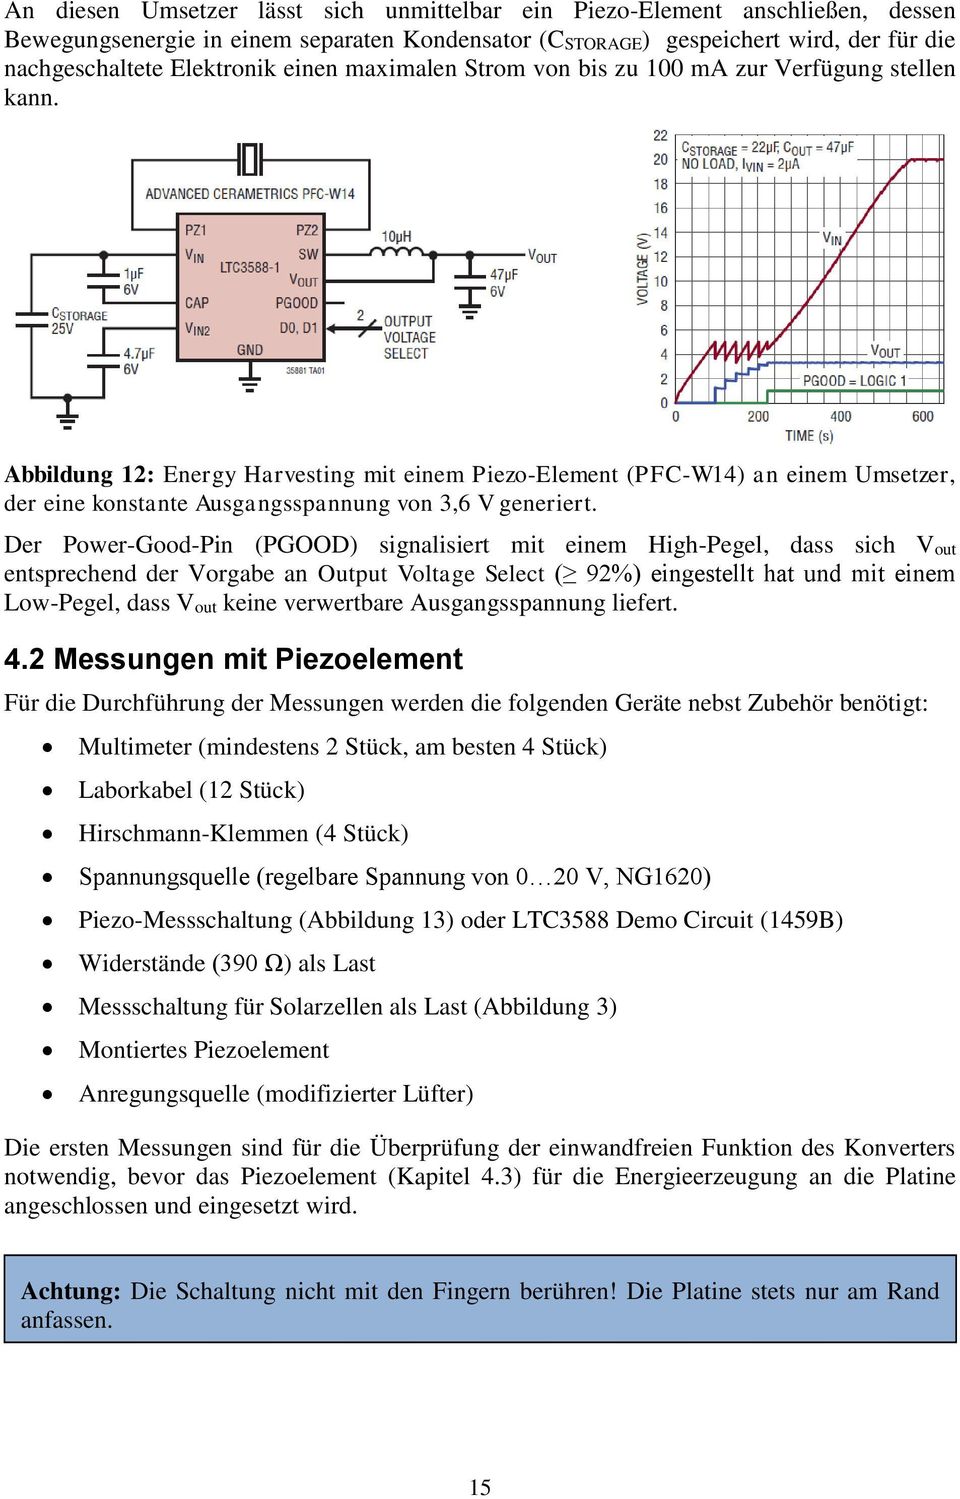 Abbildung 12: Energy Harvesting mit einem Piezo-Element (PFC-W14) an einem Umsetzer, der eine konstante Ausgangsspannung von 3,6 V generiert.